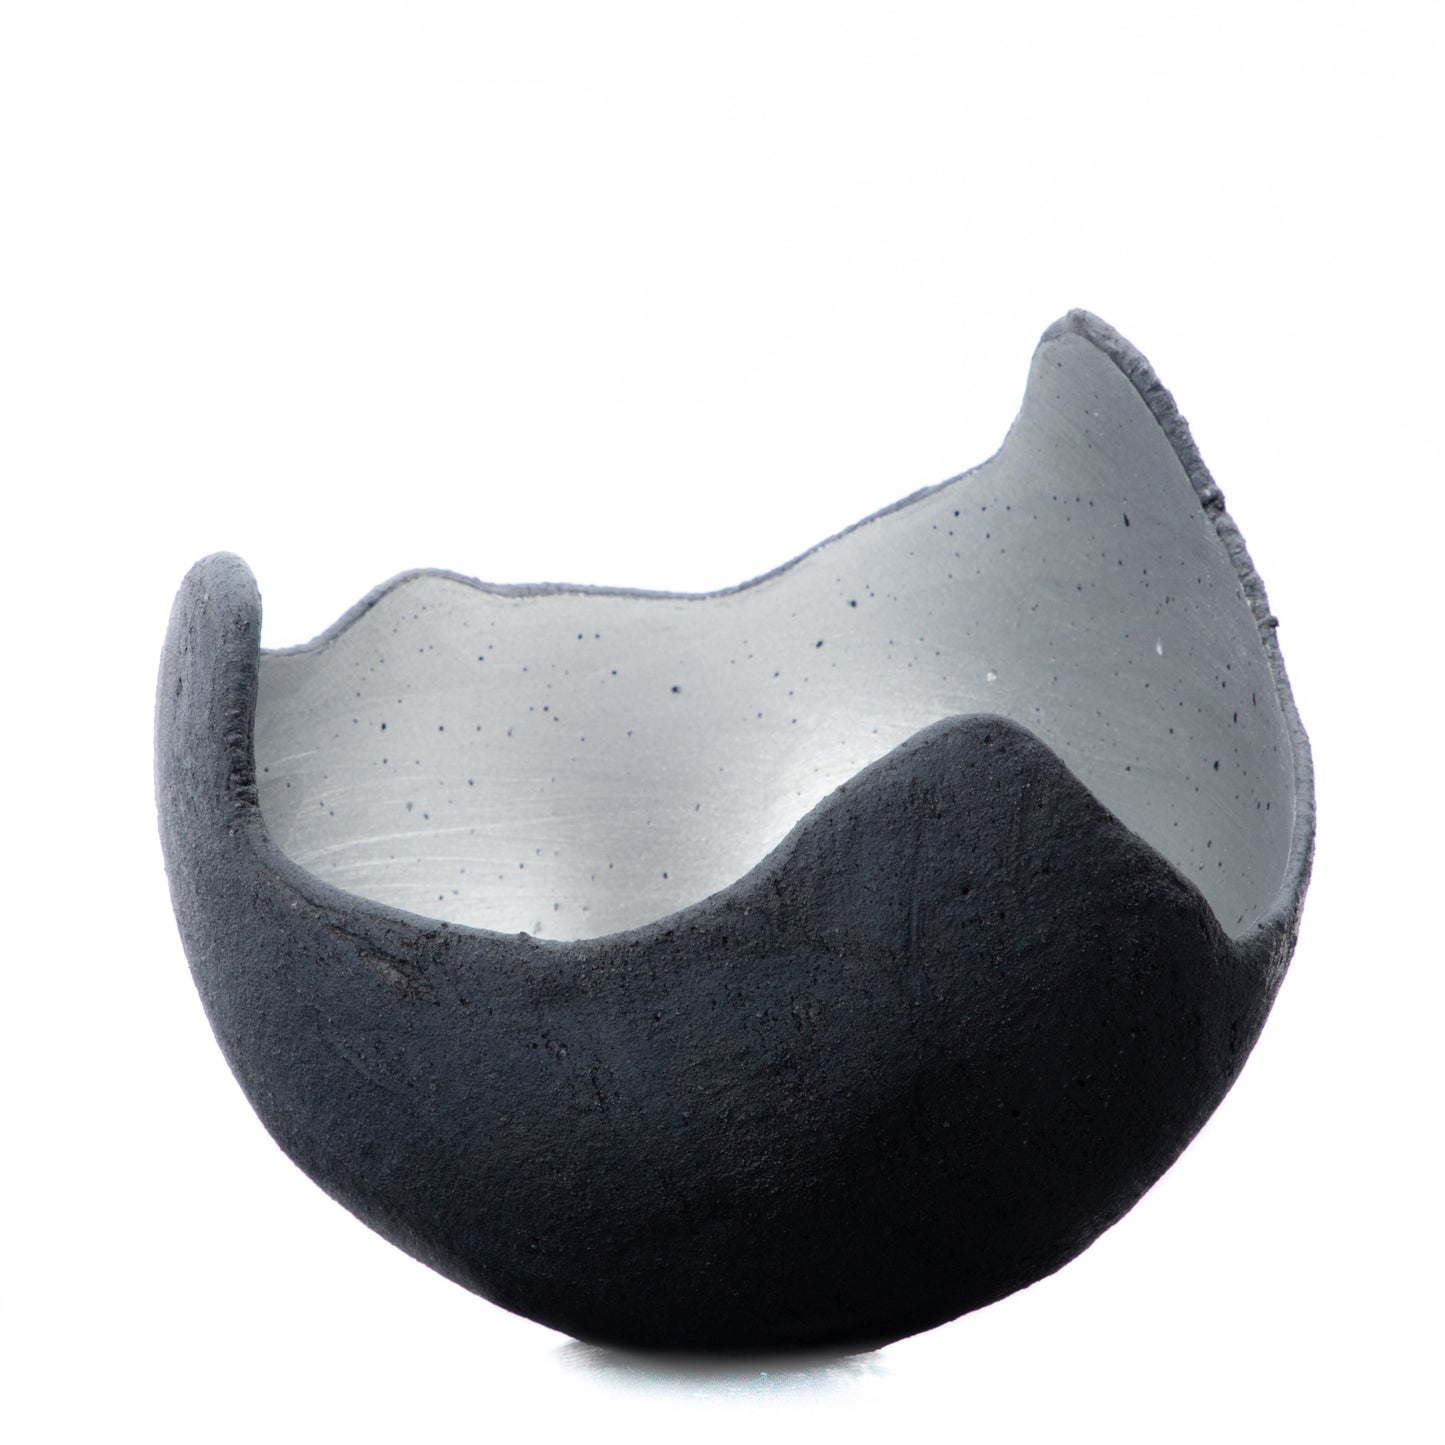 Edle Dekoschale in silber glänzend - S (15cm) - Beton schwarz - grau